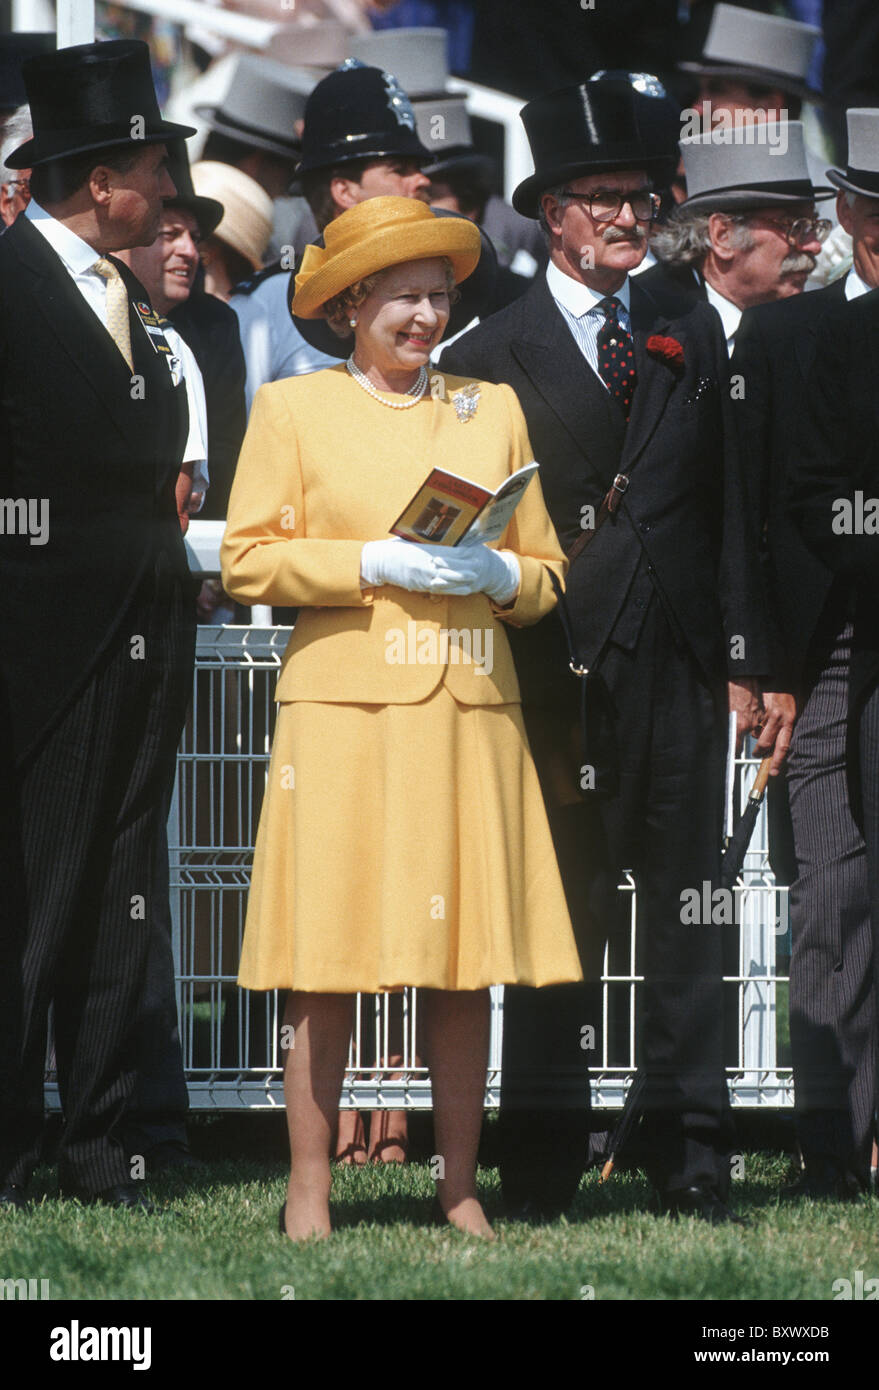 La reine Elizabeth II à la Derby d'Epsom Races, Grande-Bretagne Banque D'Images